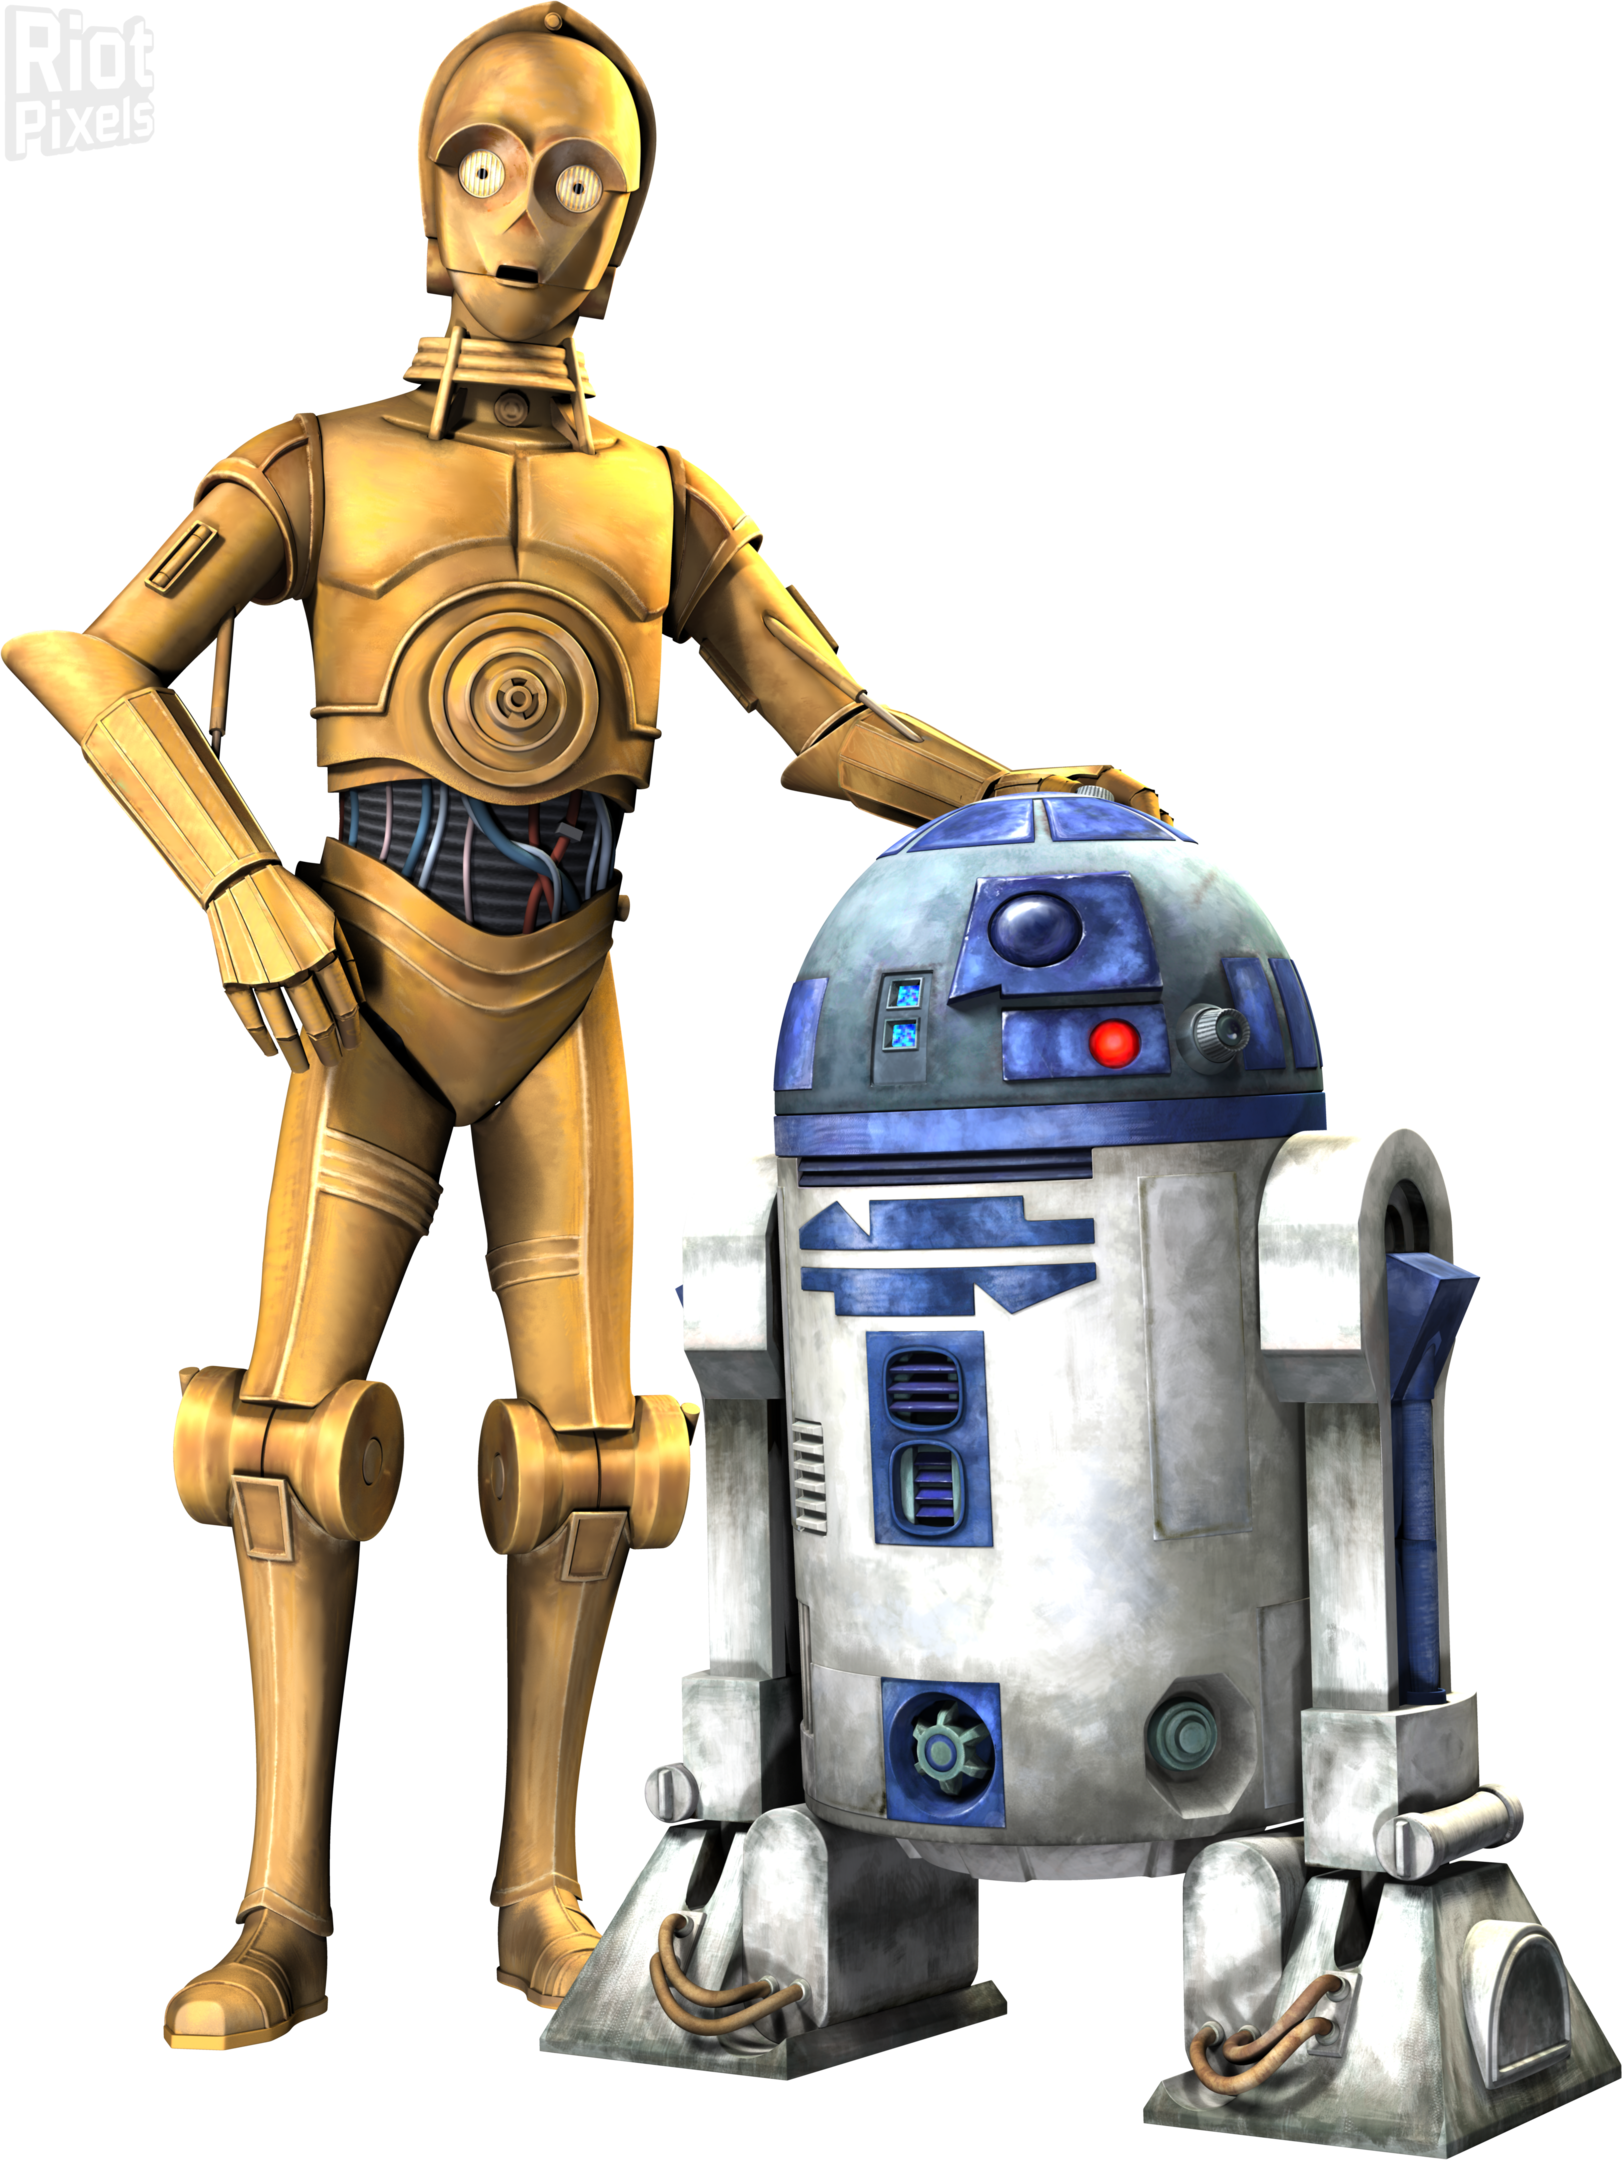 A Robot Standing Next To A Robot